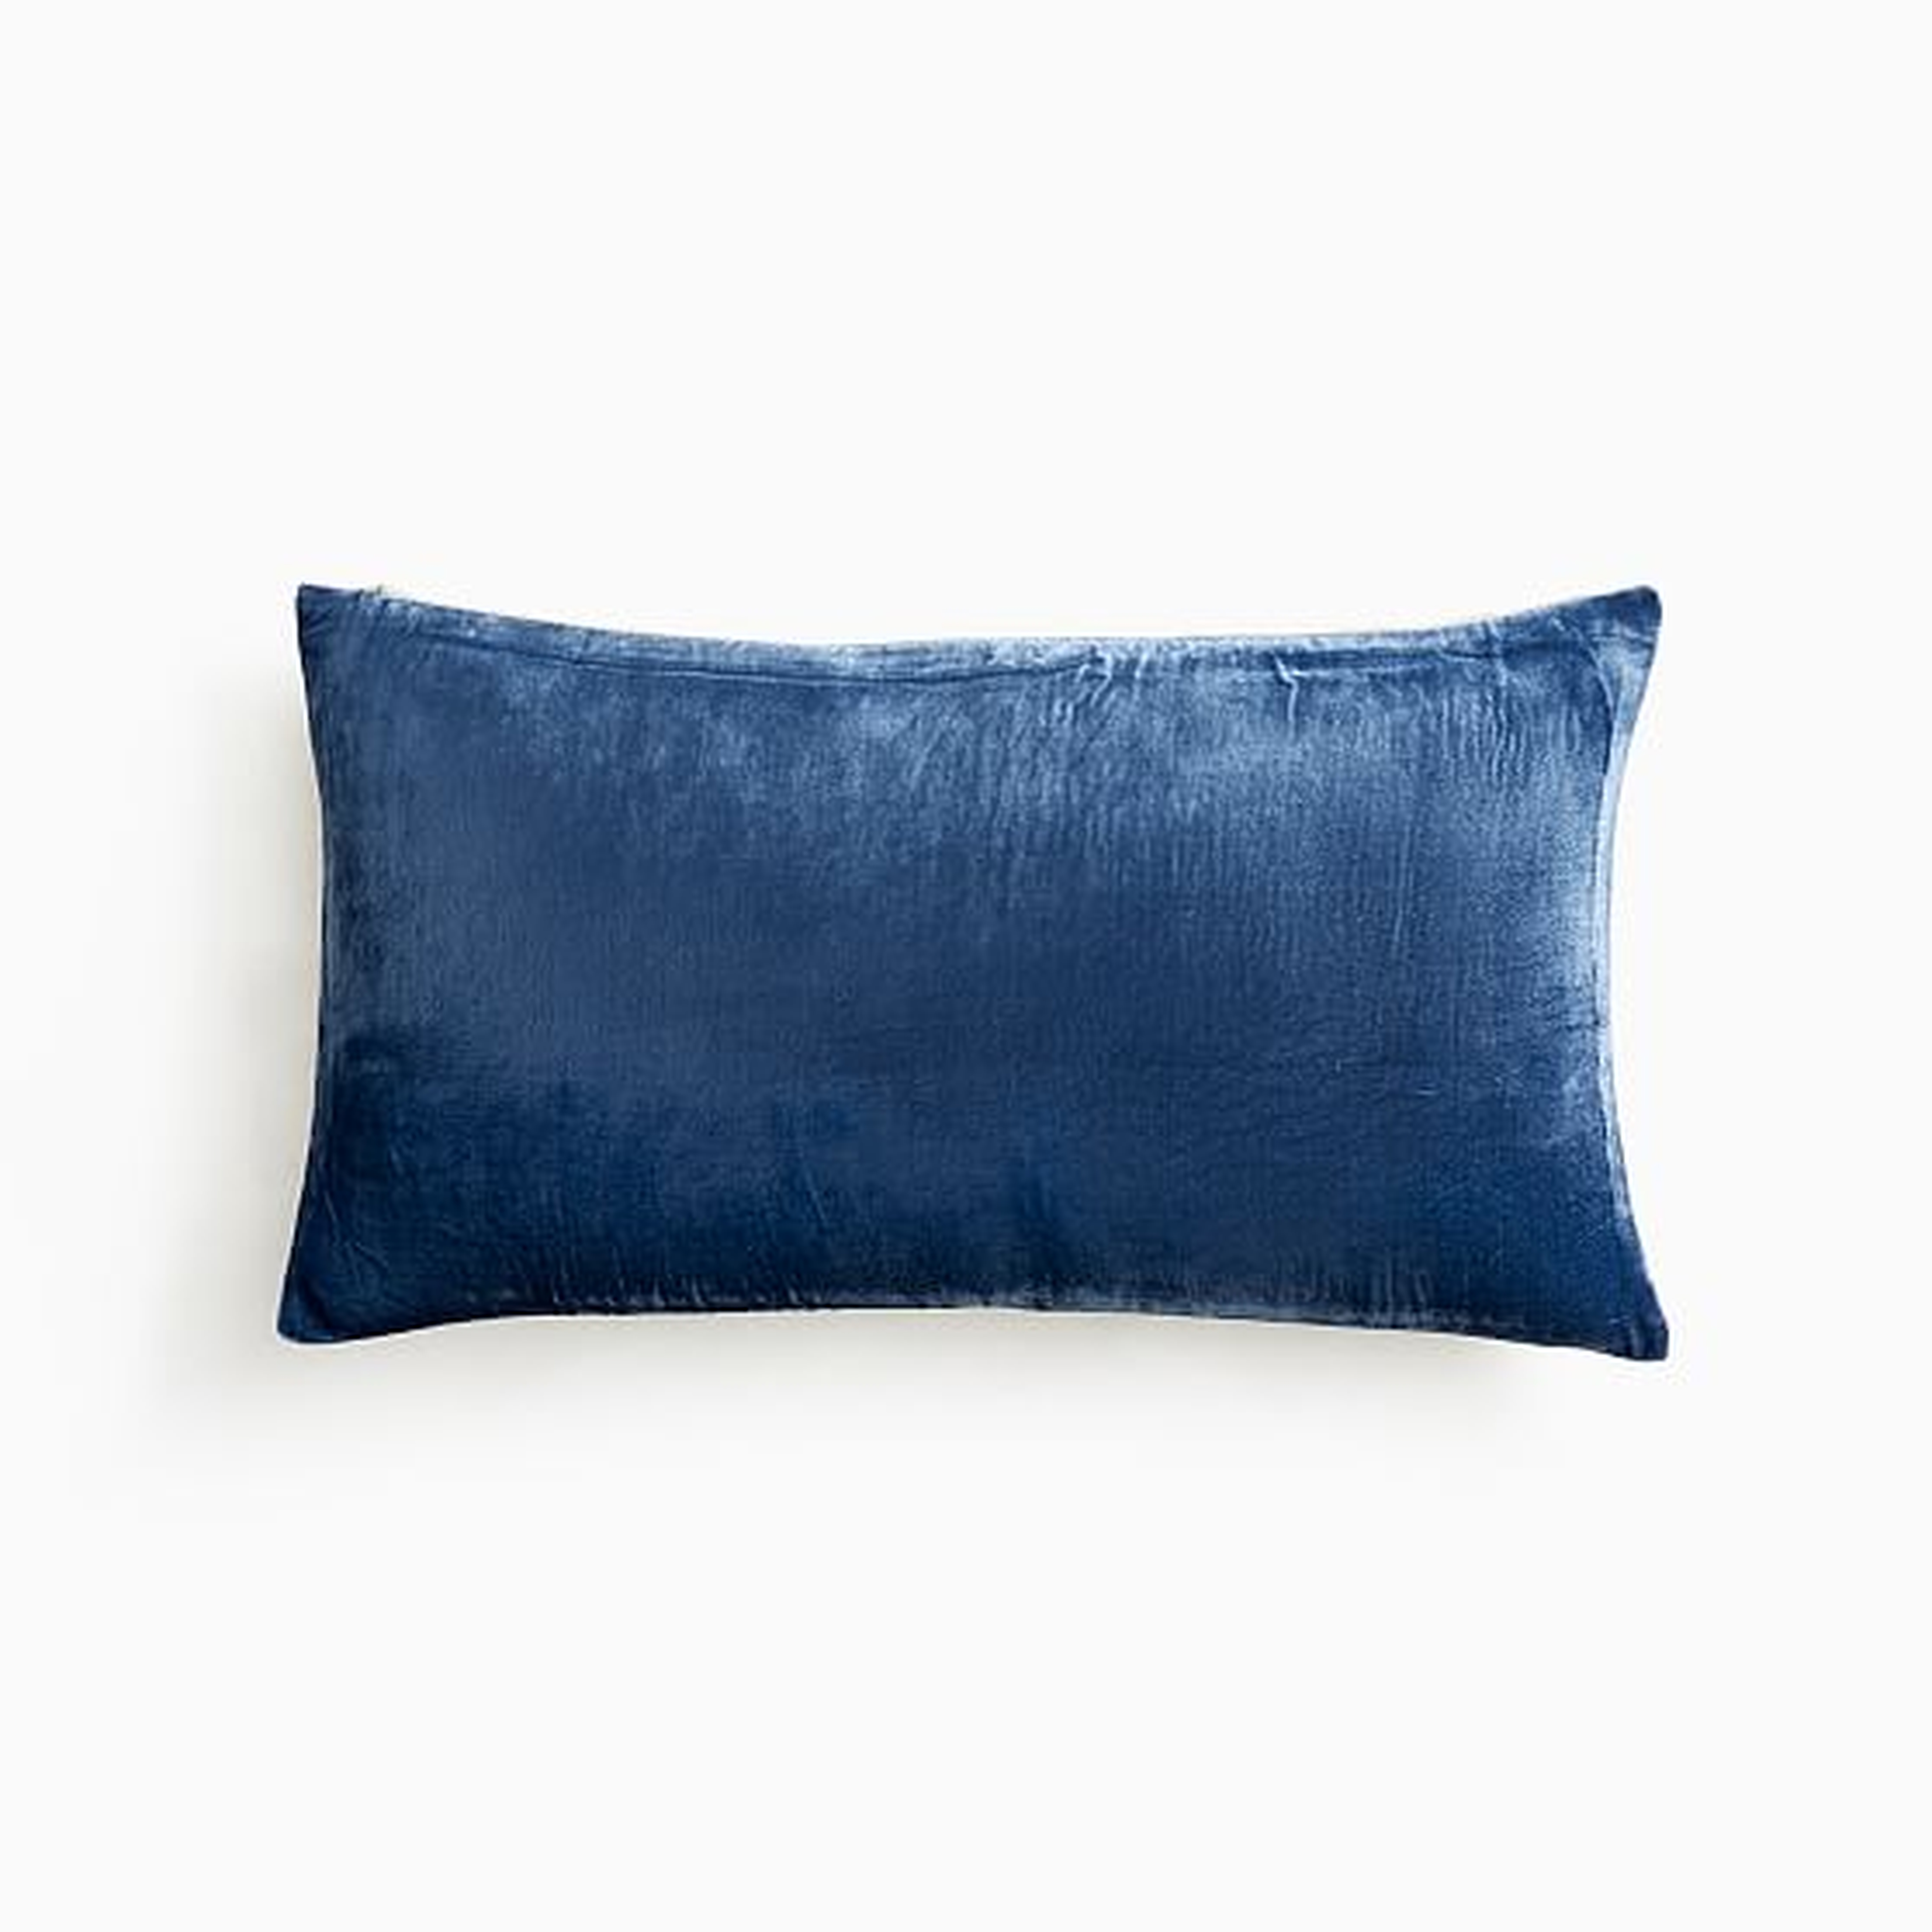 Lush Velvet Pillow Cover, 12"x21", French Blue - West Elm